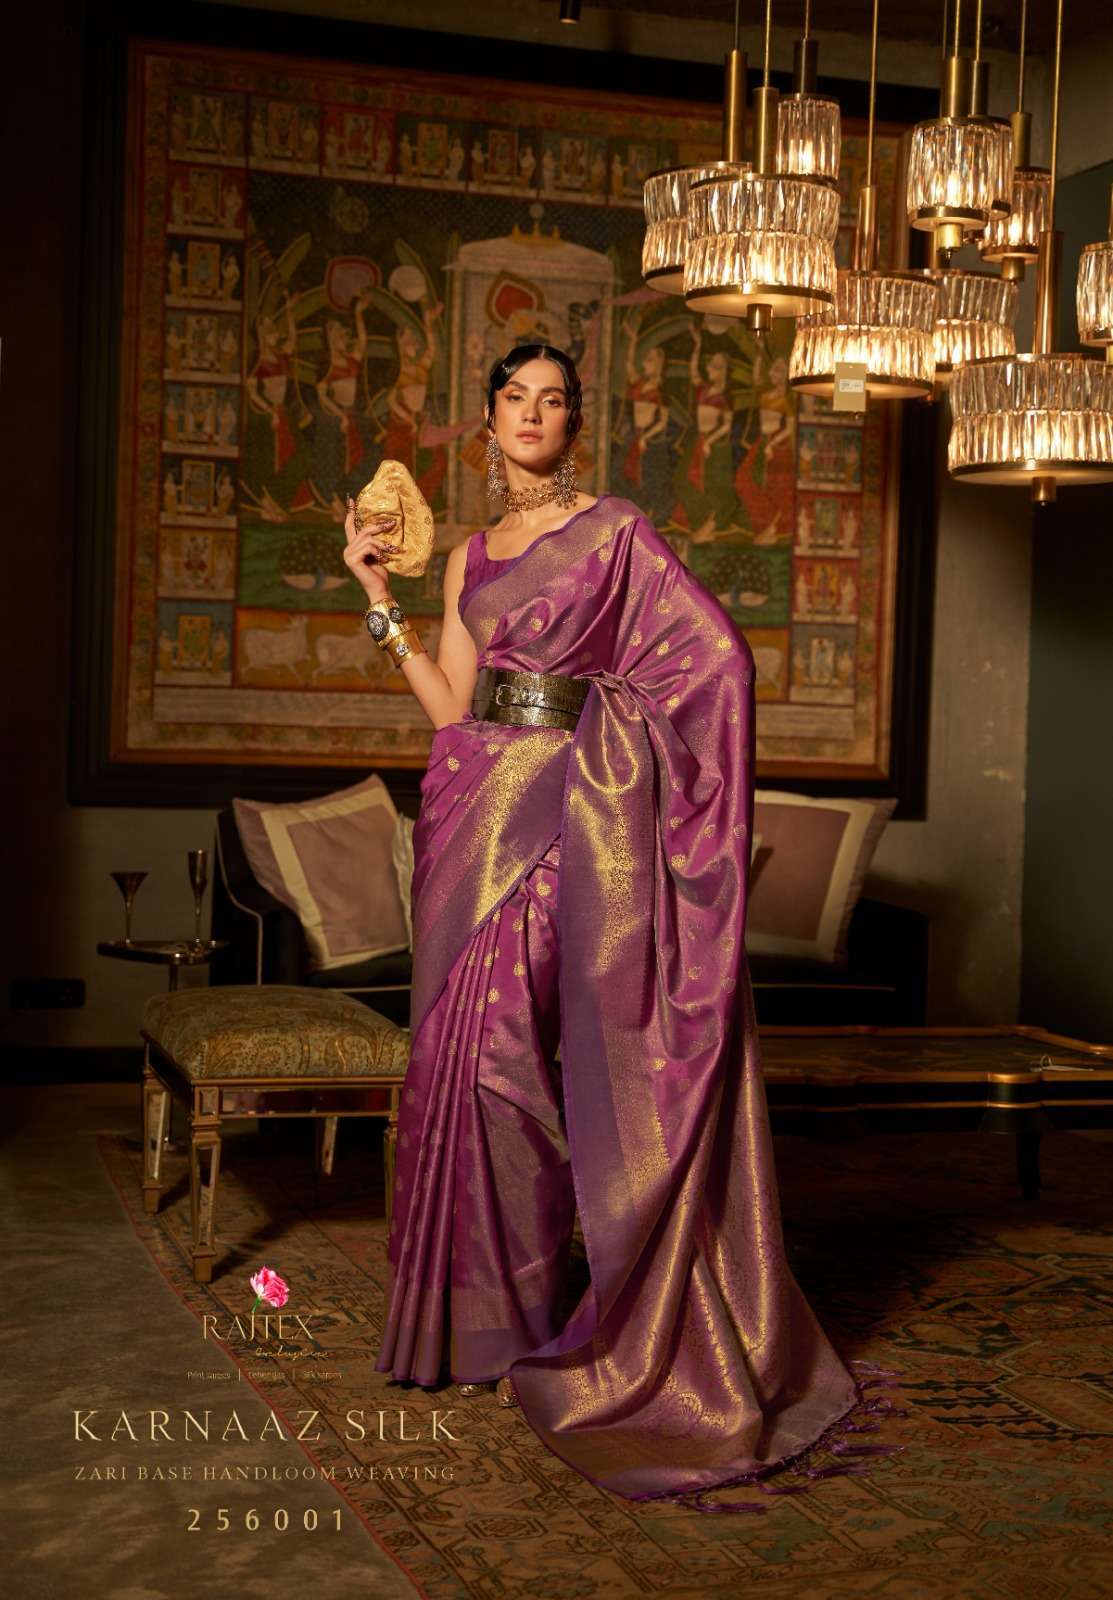 rajtex karnaaz silk series 256001-256007 weaving silk saree